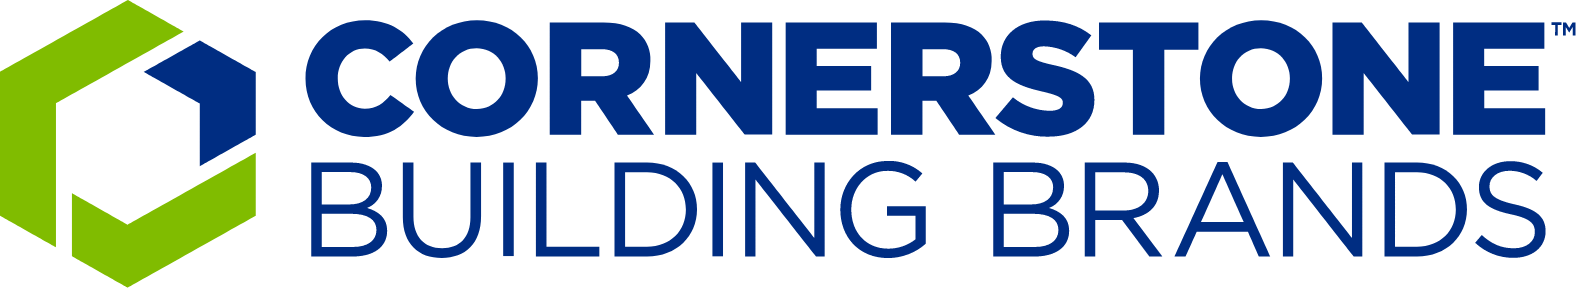 Cornerstone Building Brands logo large (transparent PNG)